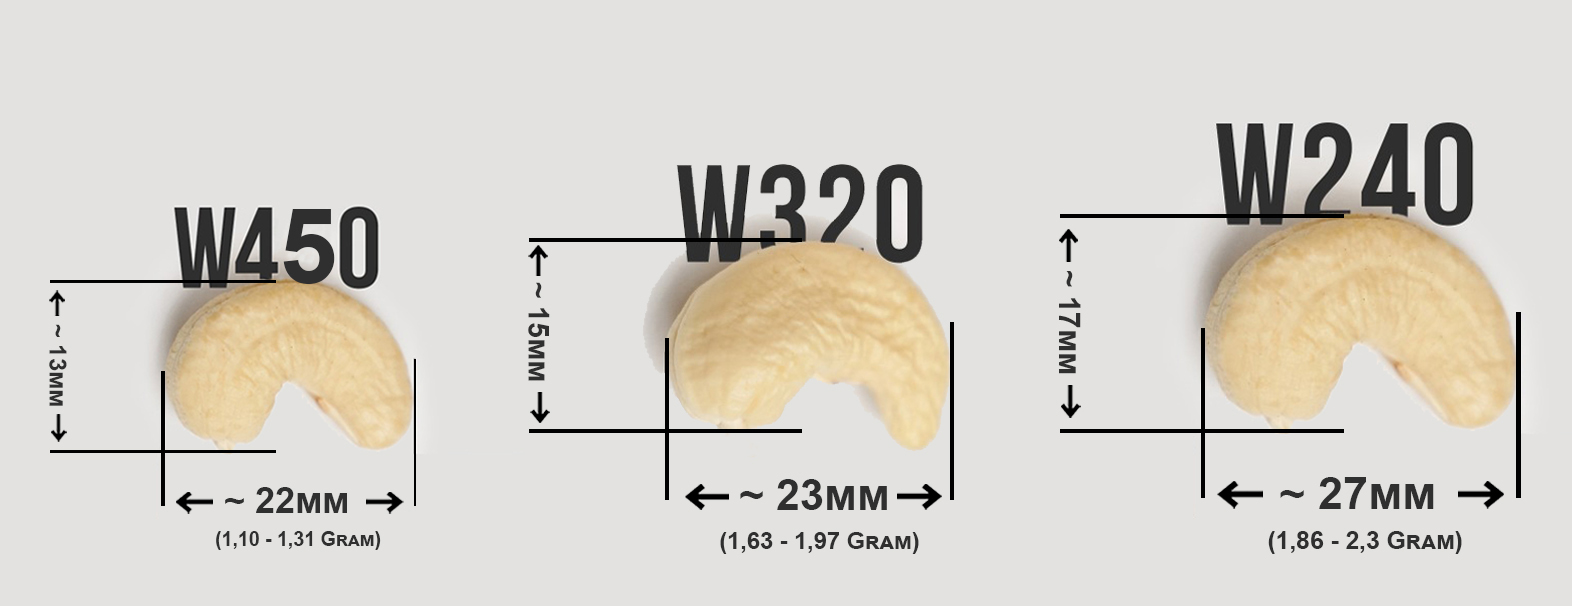 Bảng Size Hạt Điều giữa: Hạt điều W450 – Hạt điều W320 – Hạt điều W240 – Kimmy Farm Vietnam